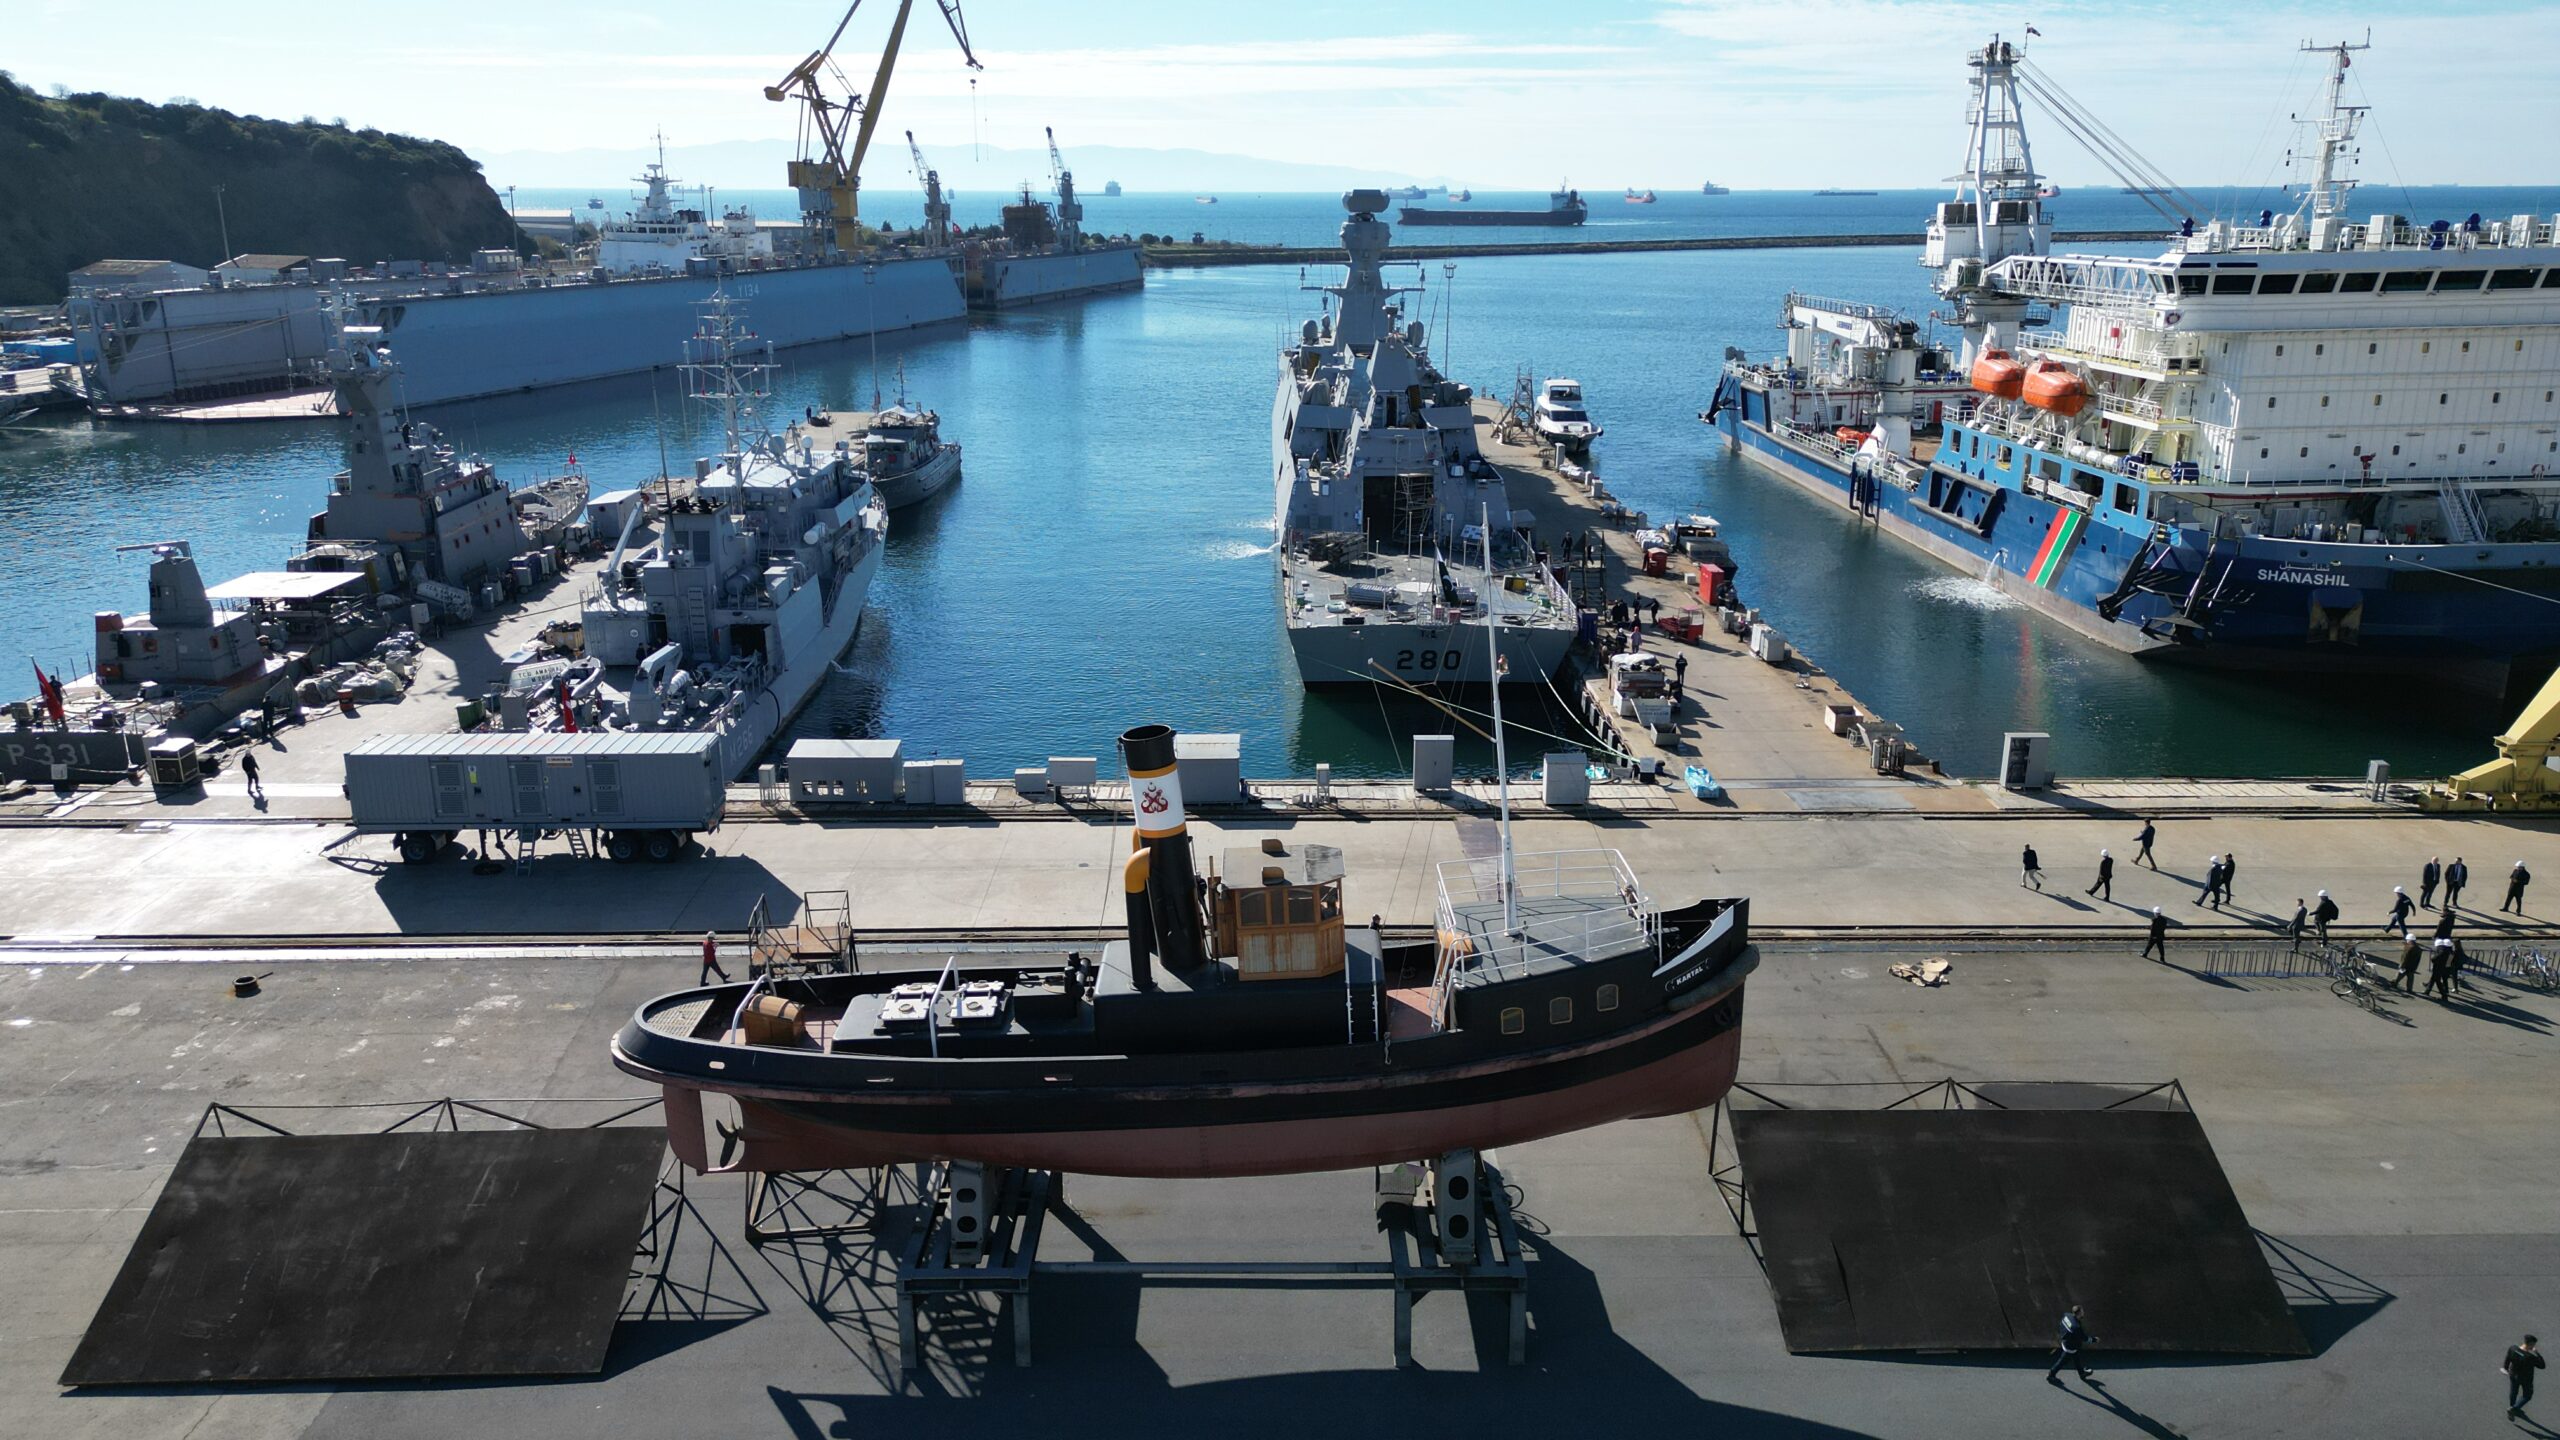 Türk gemi yapımcısı ASFAT, küresel askeri denizcilik erişimini genişletmeyi hedefliyor